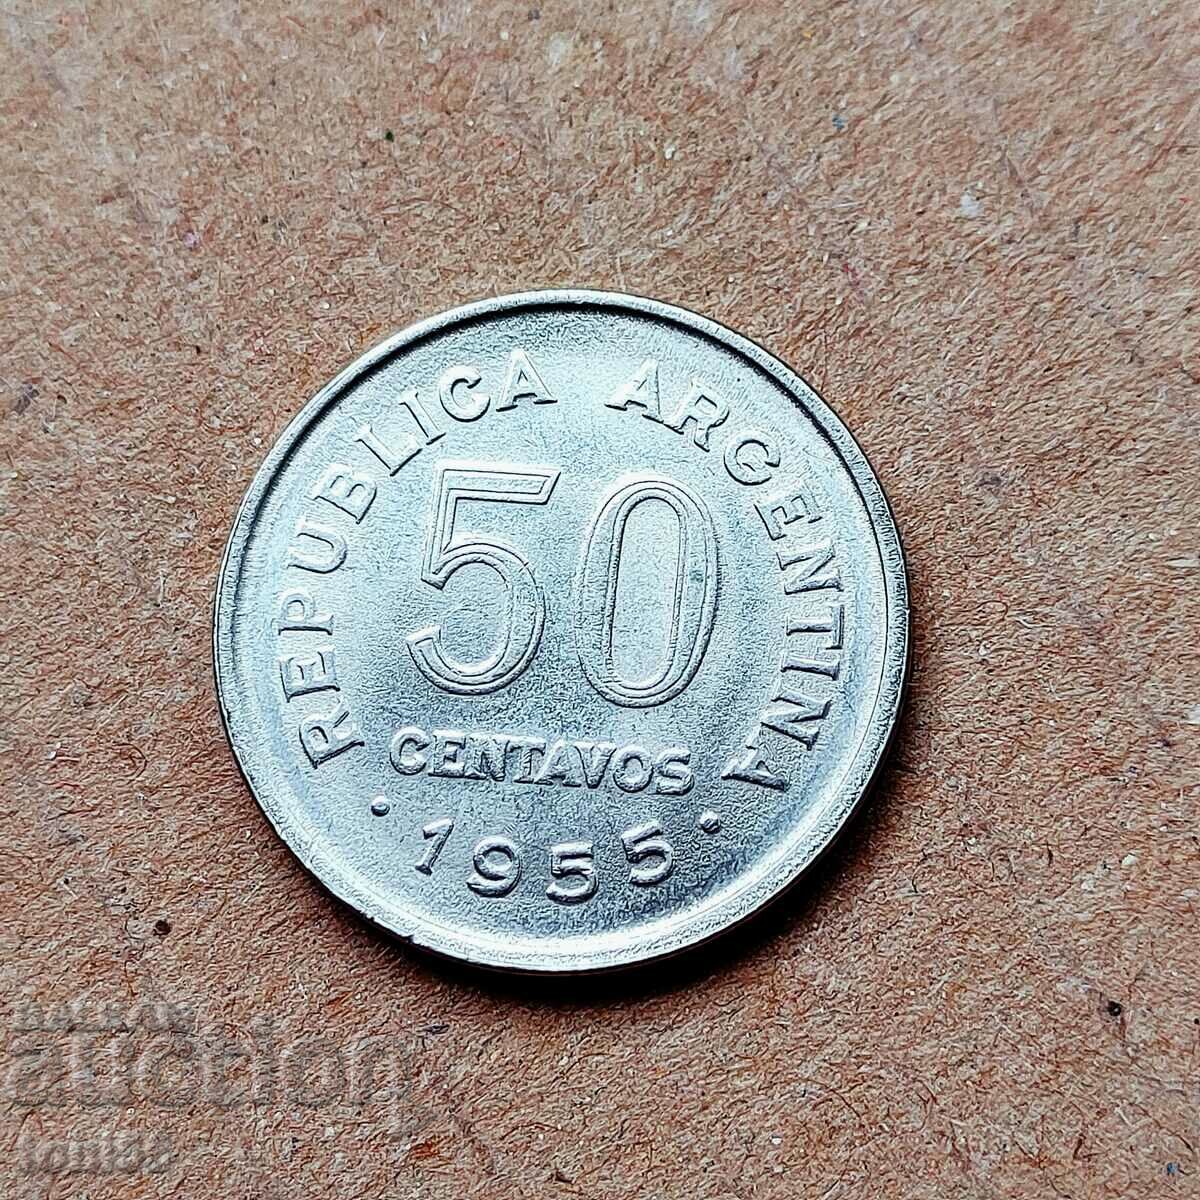 Argentina 50 centavos 1955 aUNC